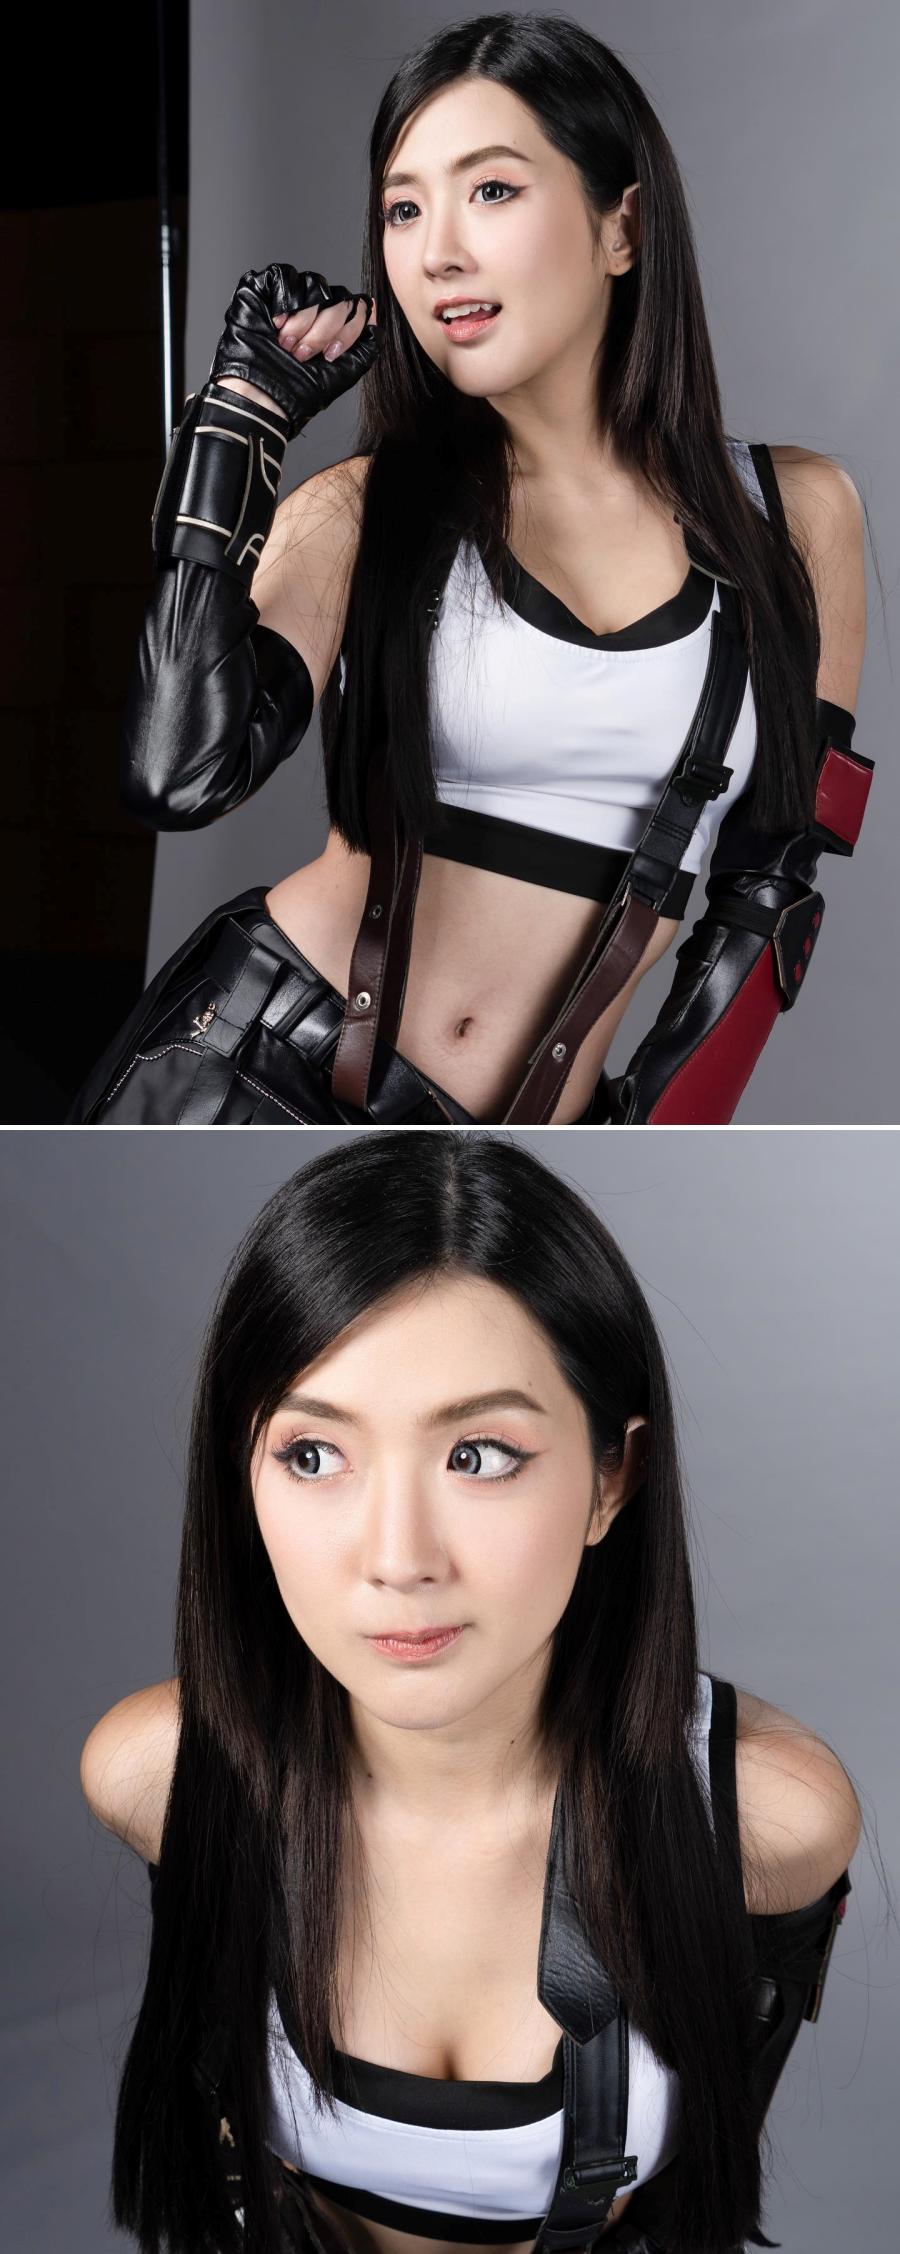 Không thể rời mắt khỏi nhan sắc cực phẩm của nữ hotgirl Thái Lan trong bộ ảnh cosplay Tifa - ảnh 3